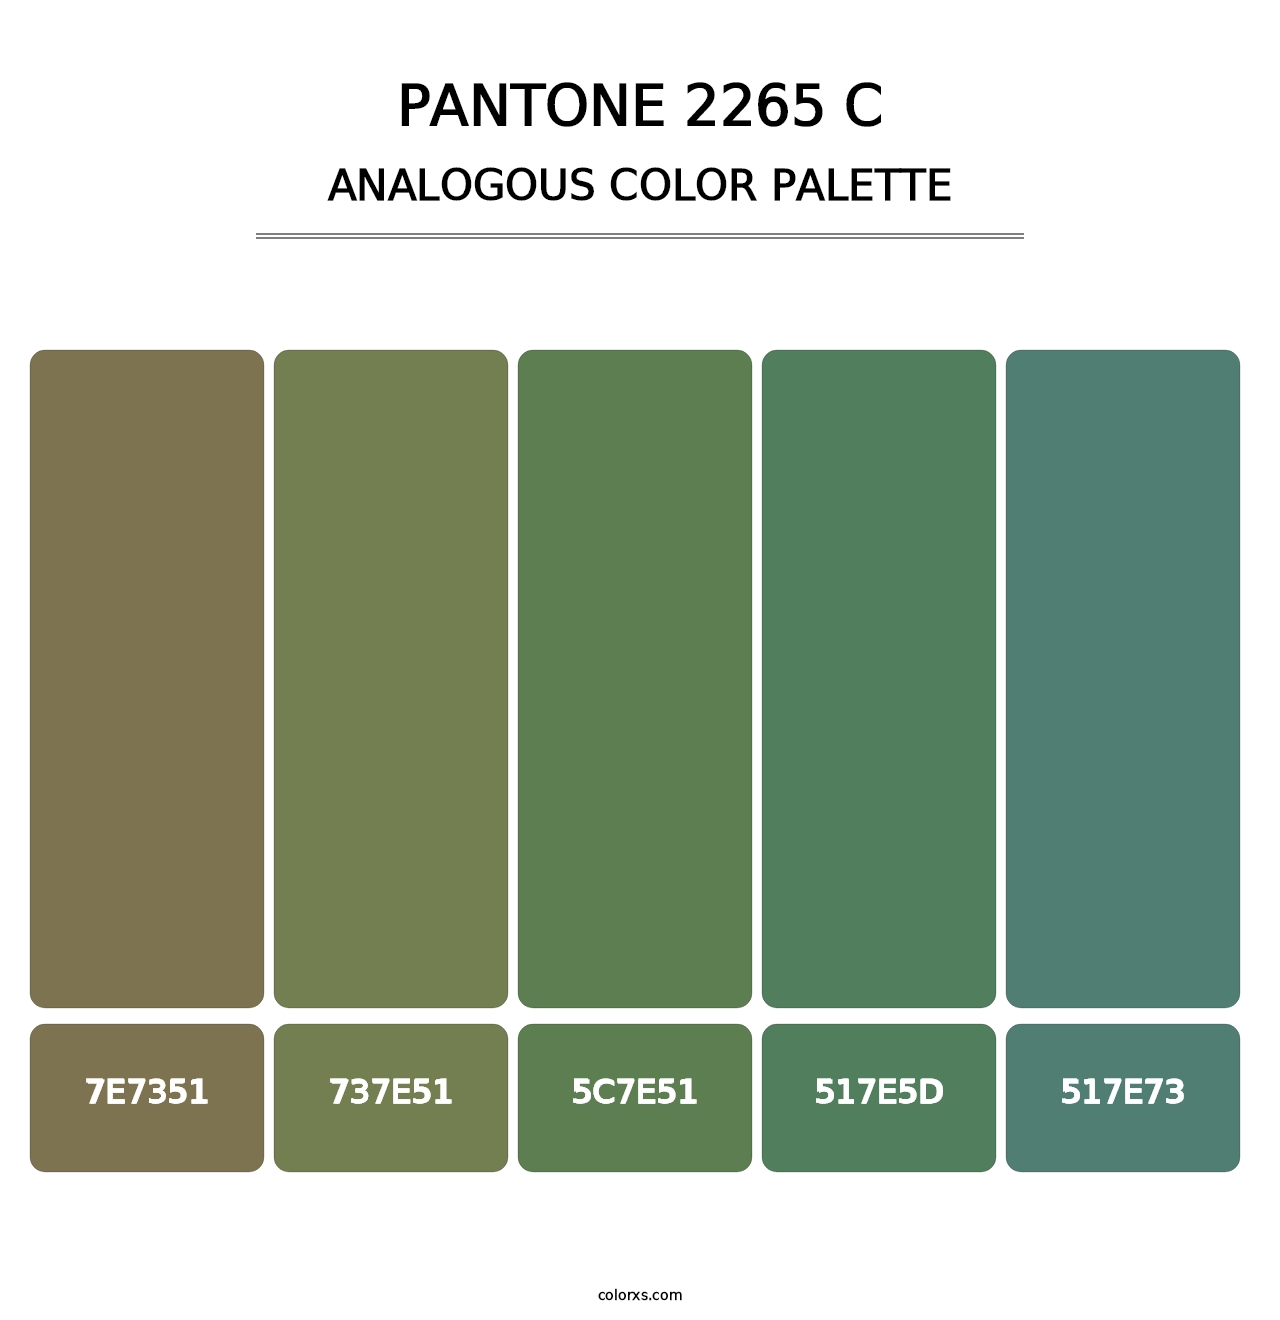 PANTONE 2265 C - Analogous Color Palette